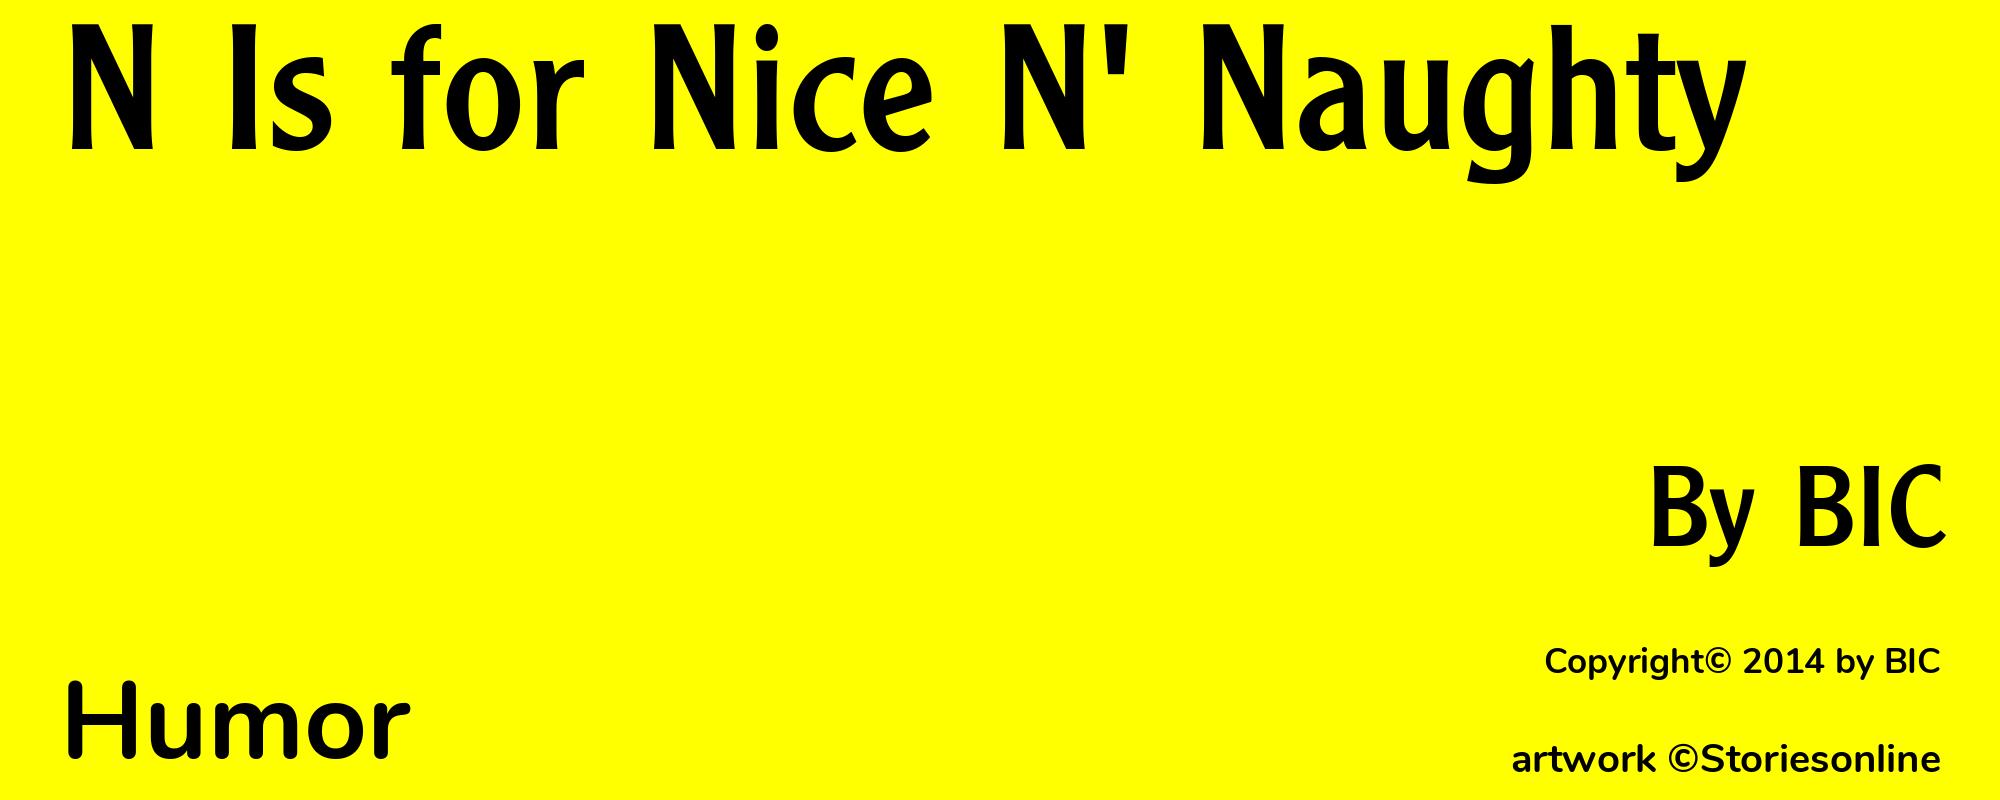 N Is for Nice N' Naughty - Cover